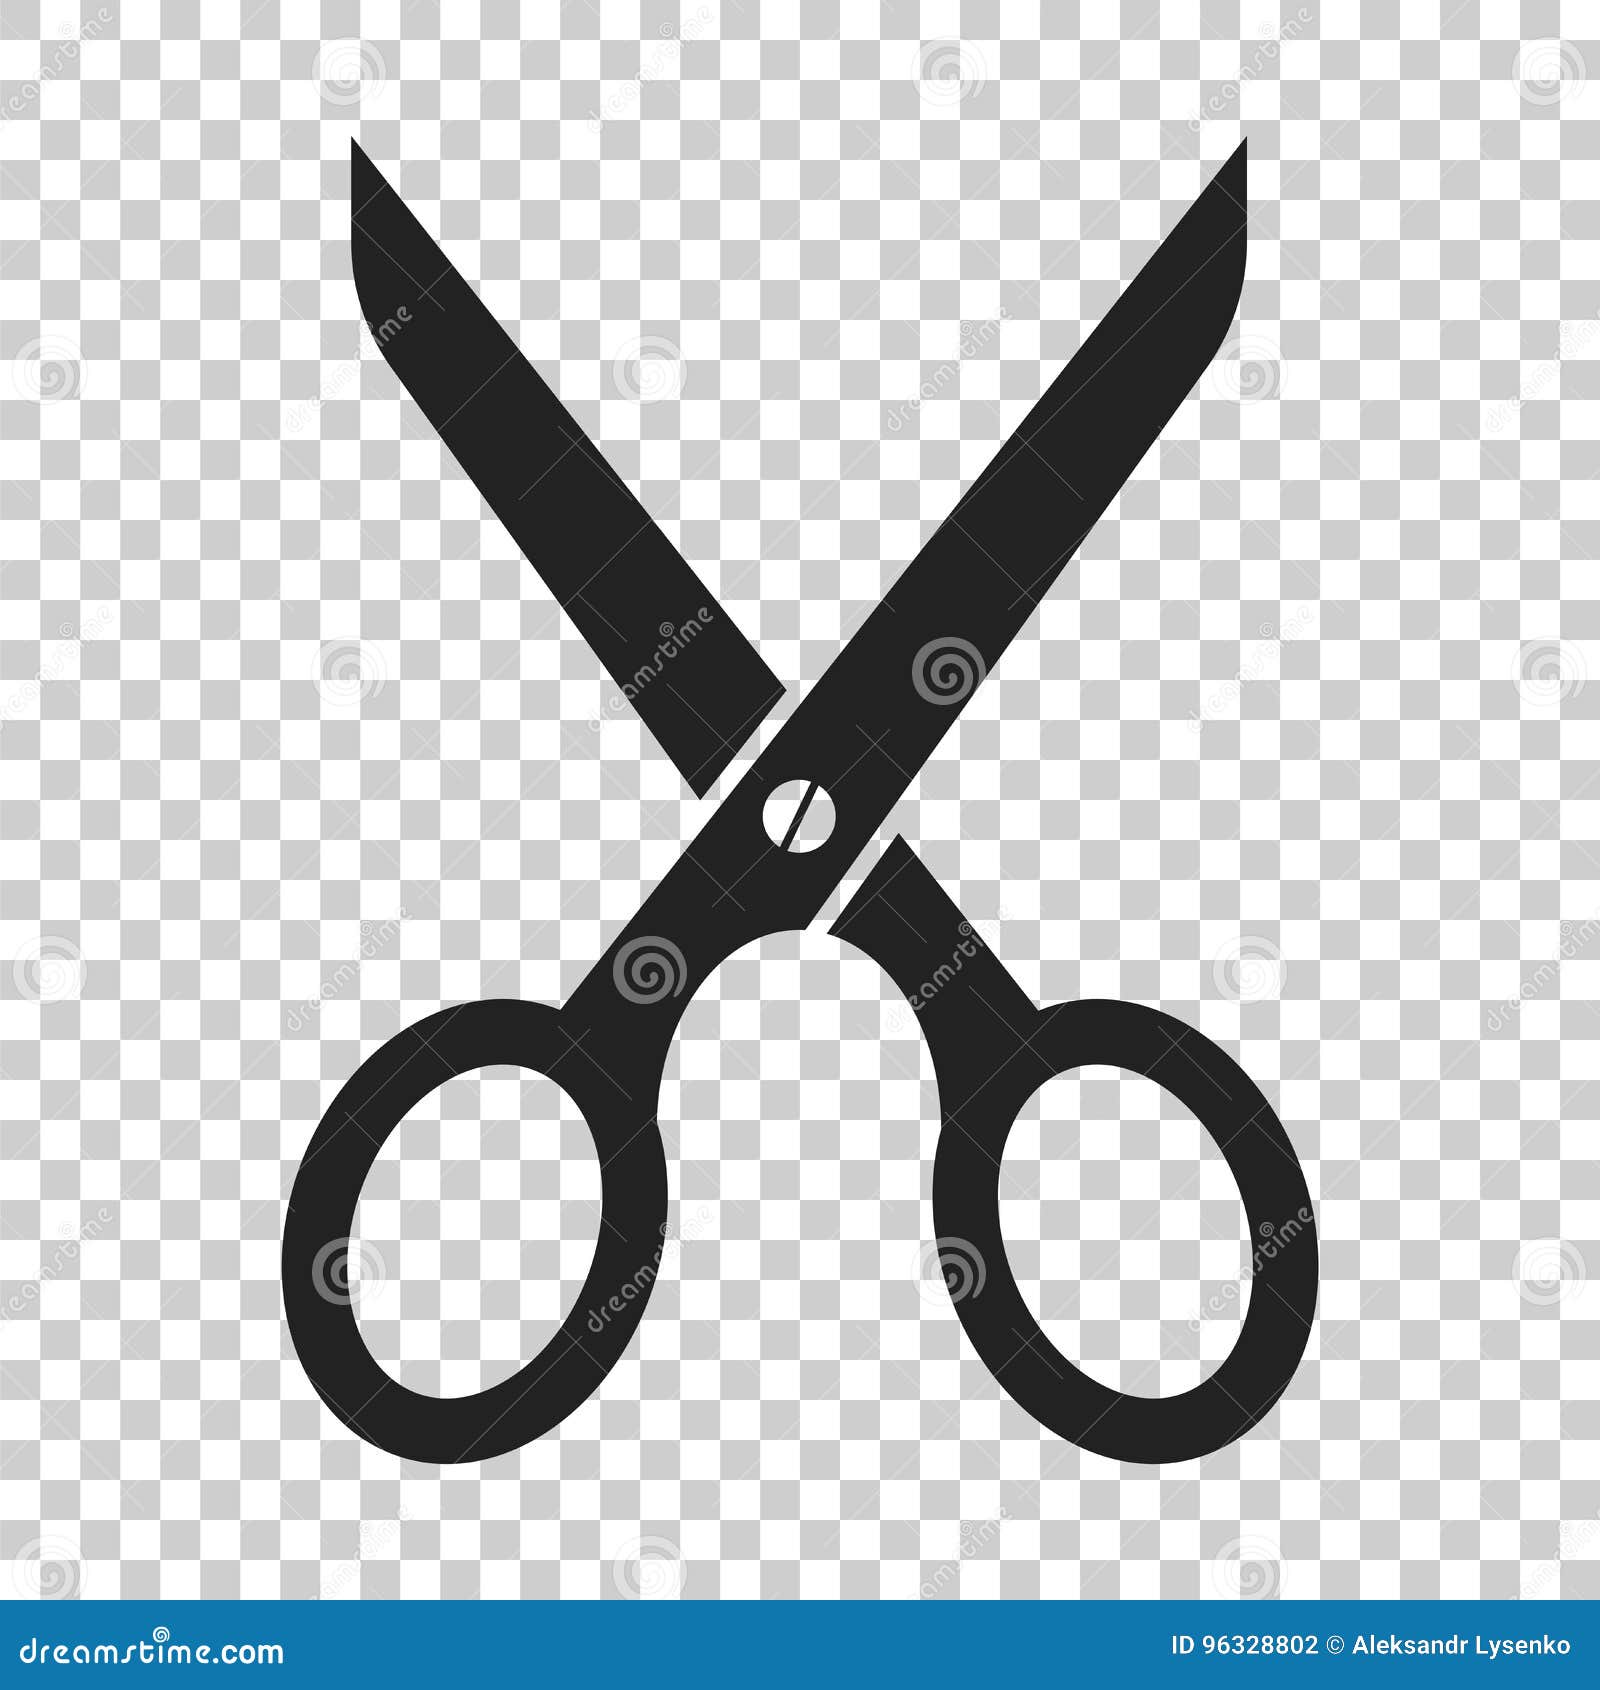 scissors flat icon. scissor  